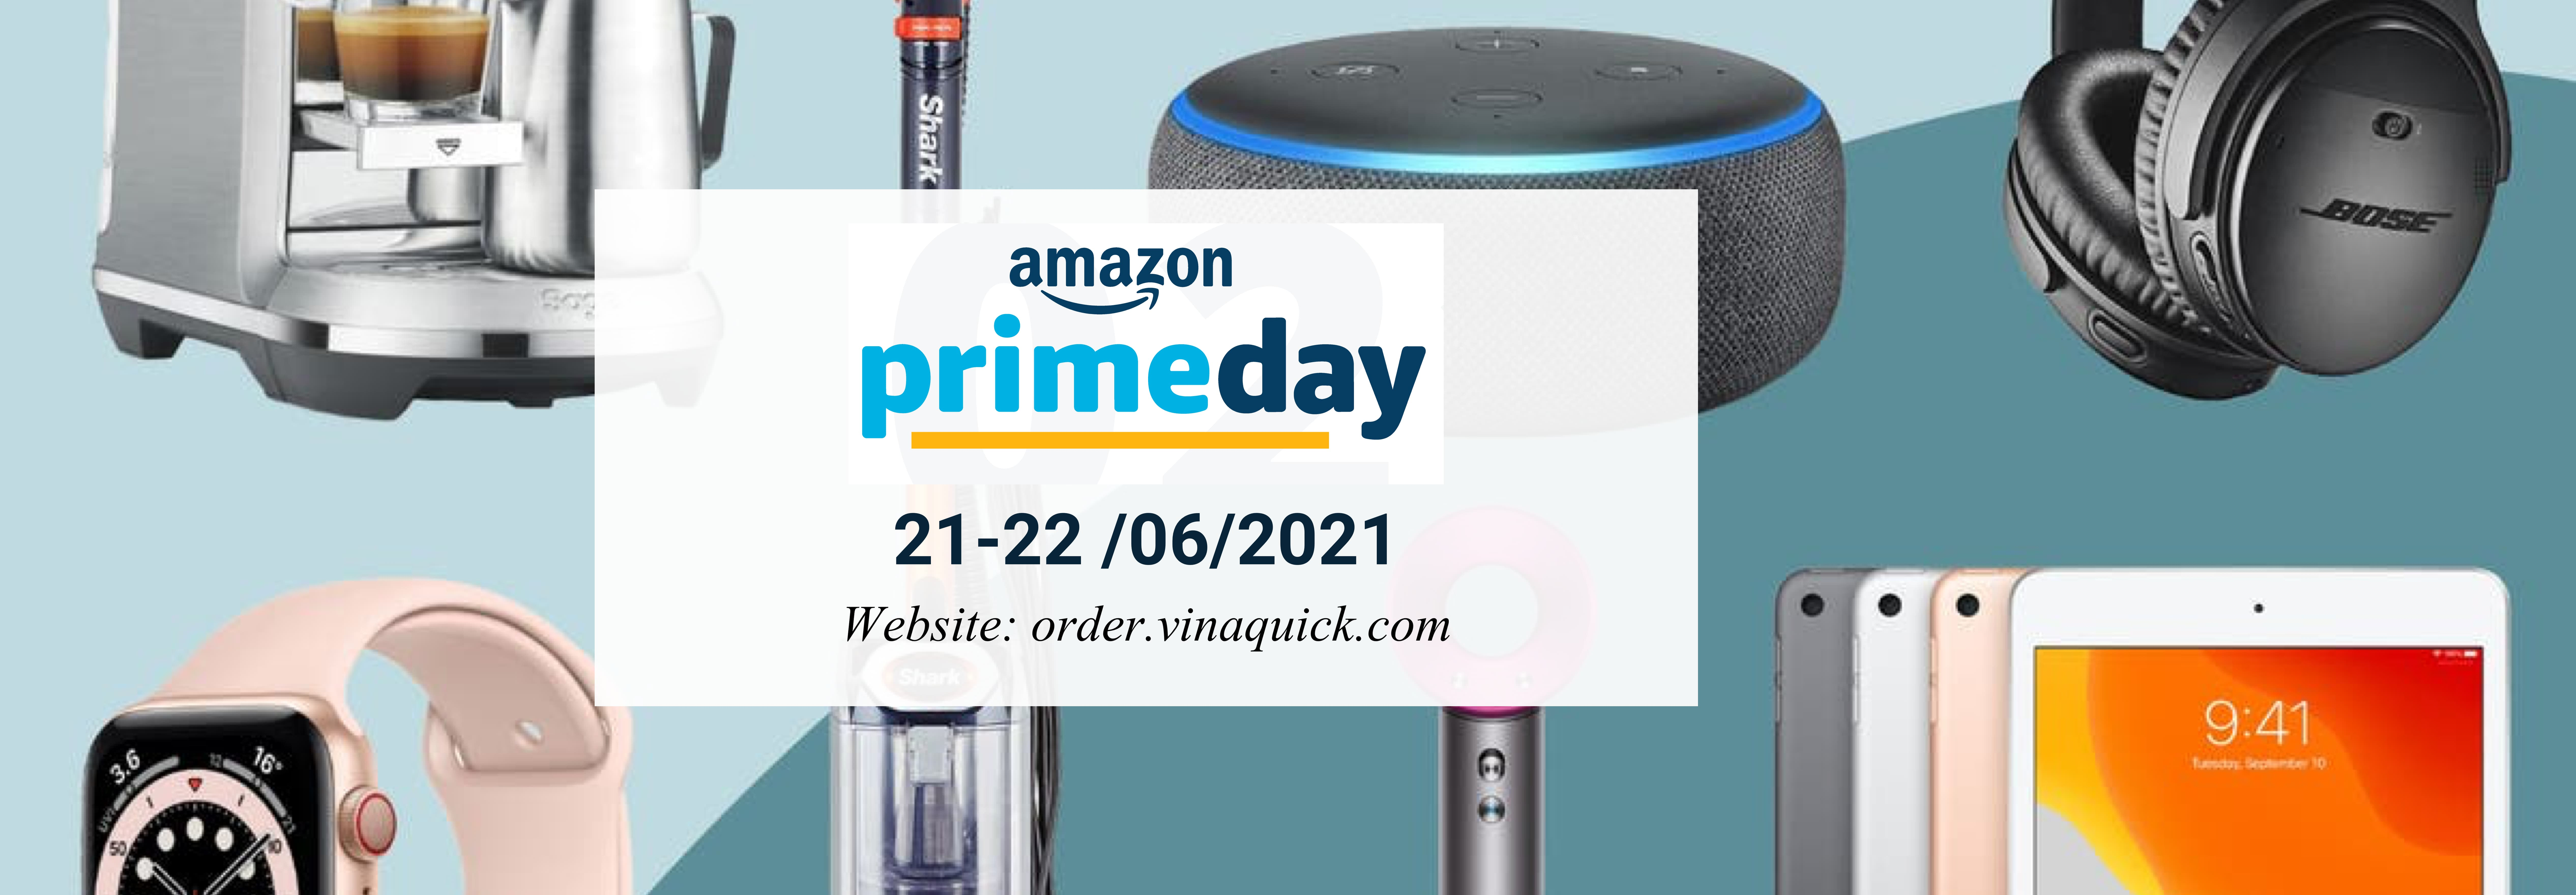 TOP 20 sản phẩm bán chạy nhất Amazon Prime day 2021!